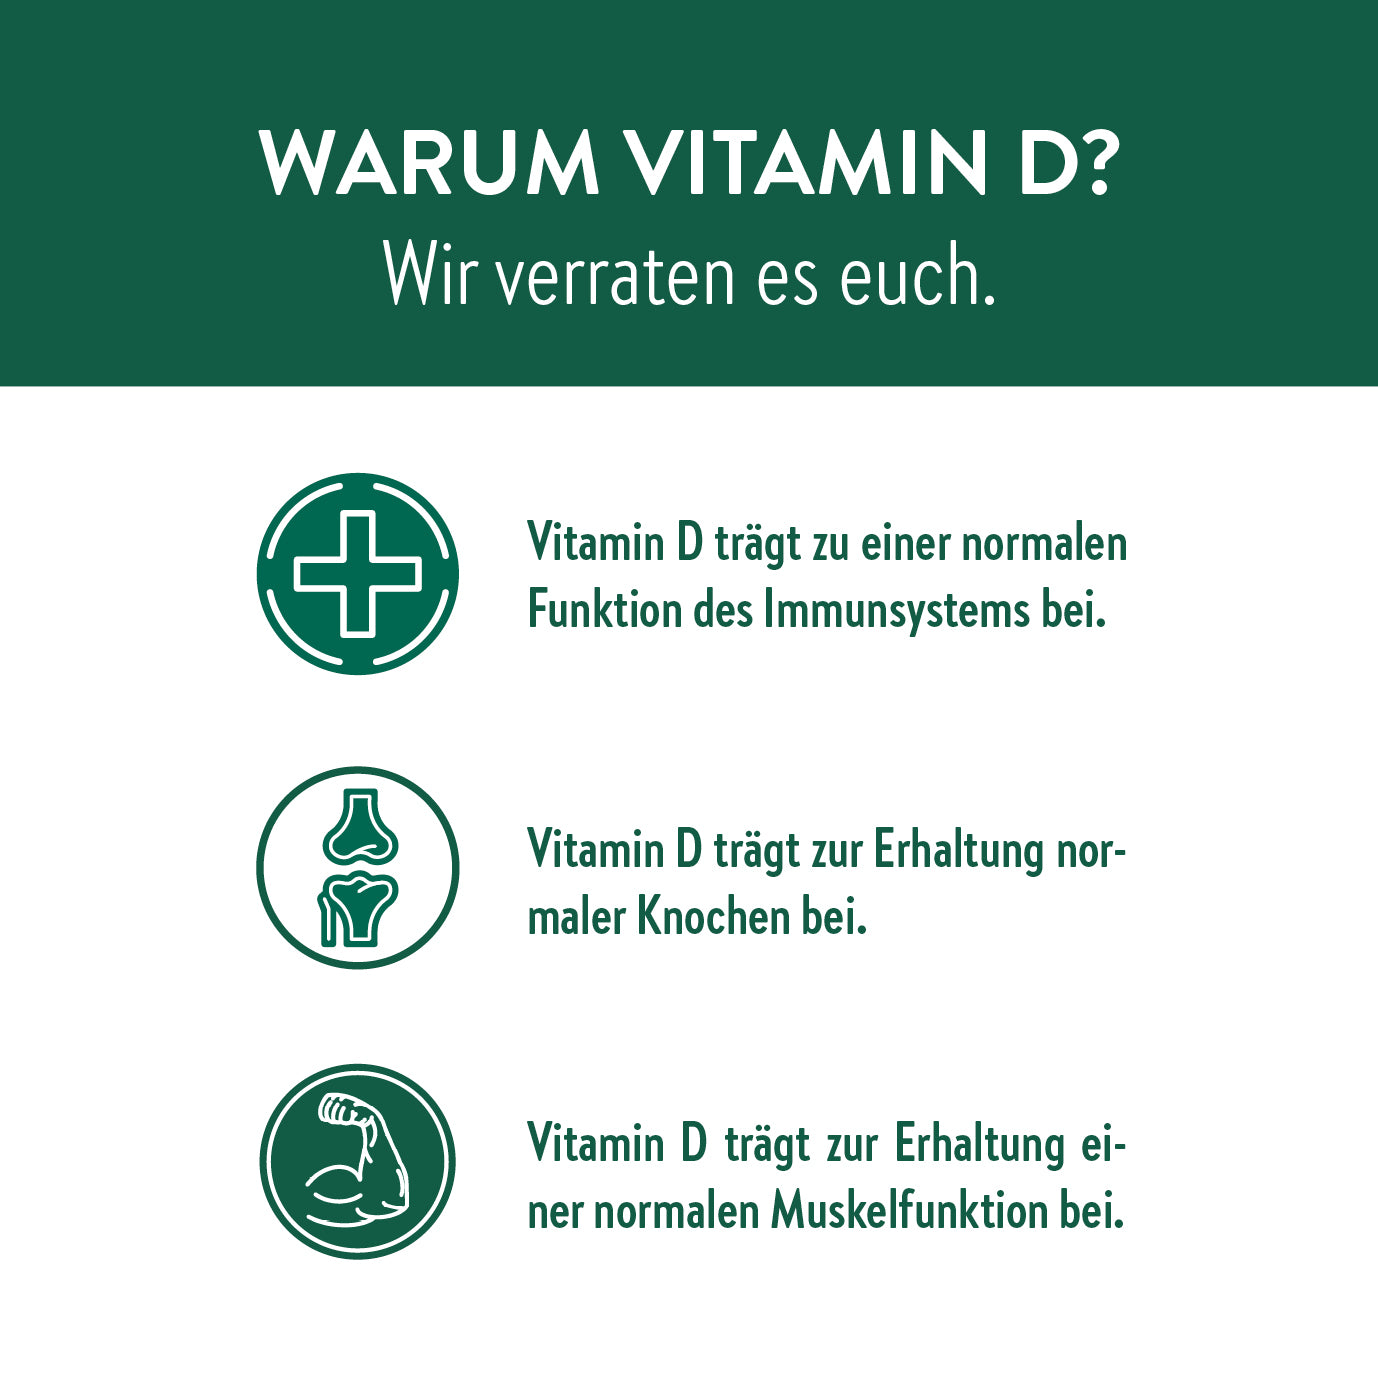 Vitamine D Kuur - Flexibel maandelijks abonnement